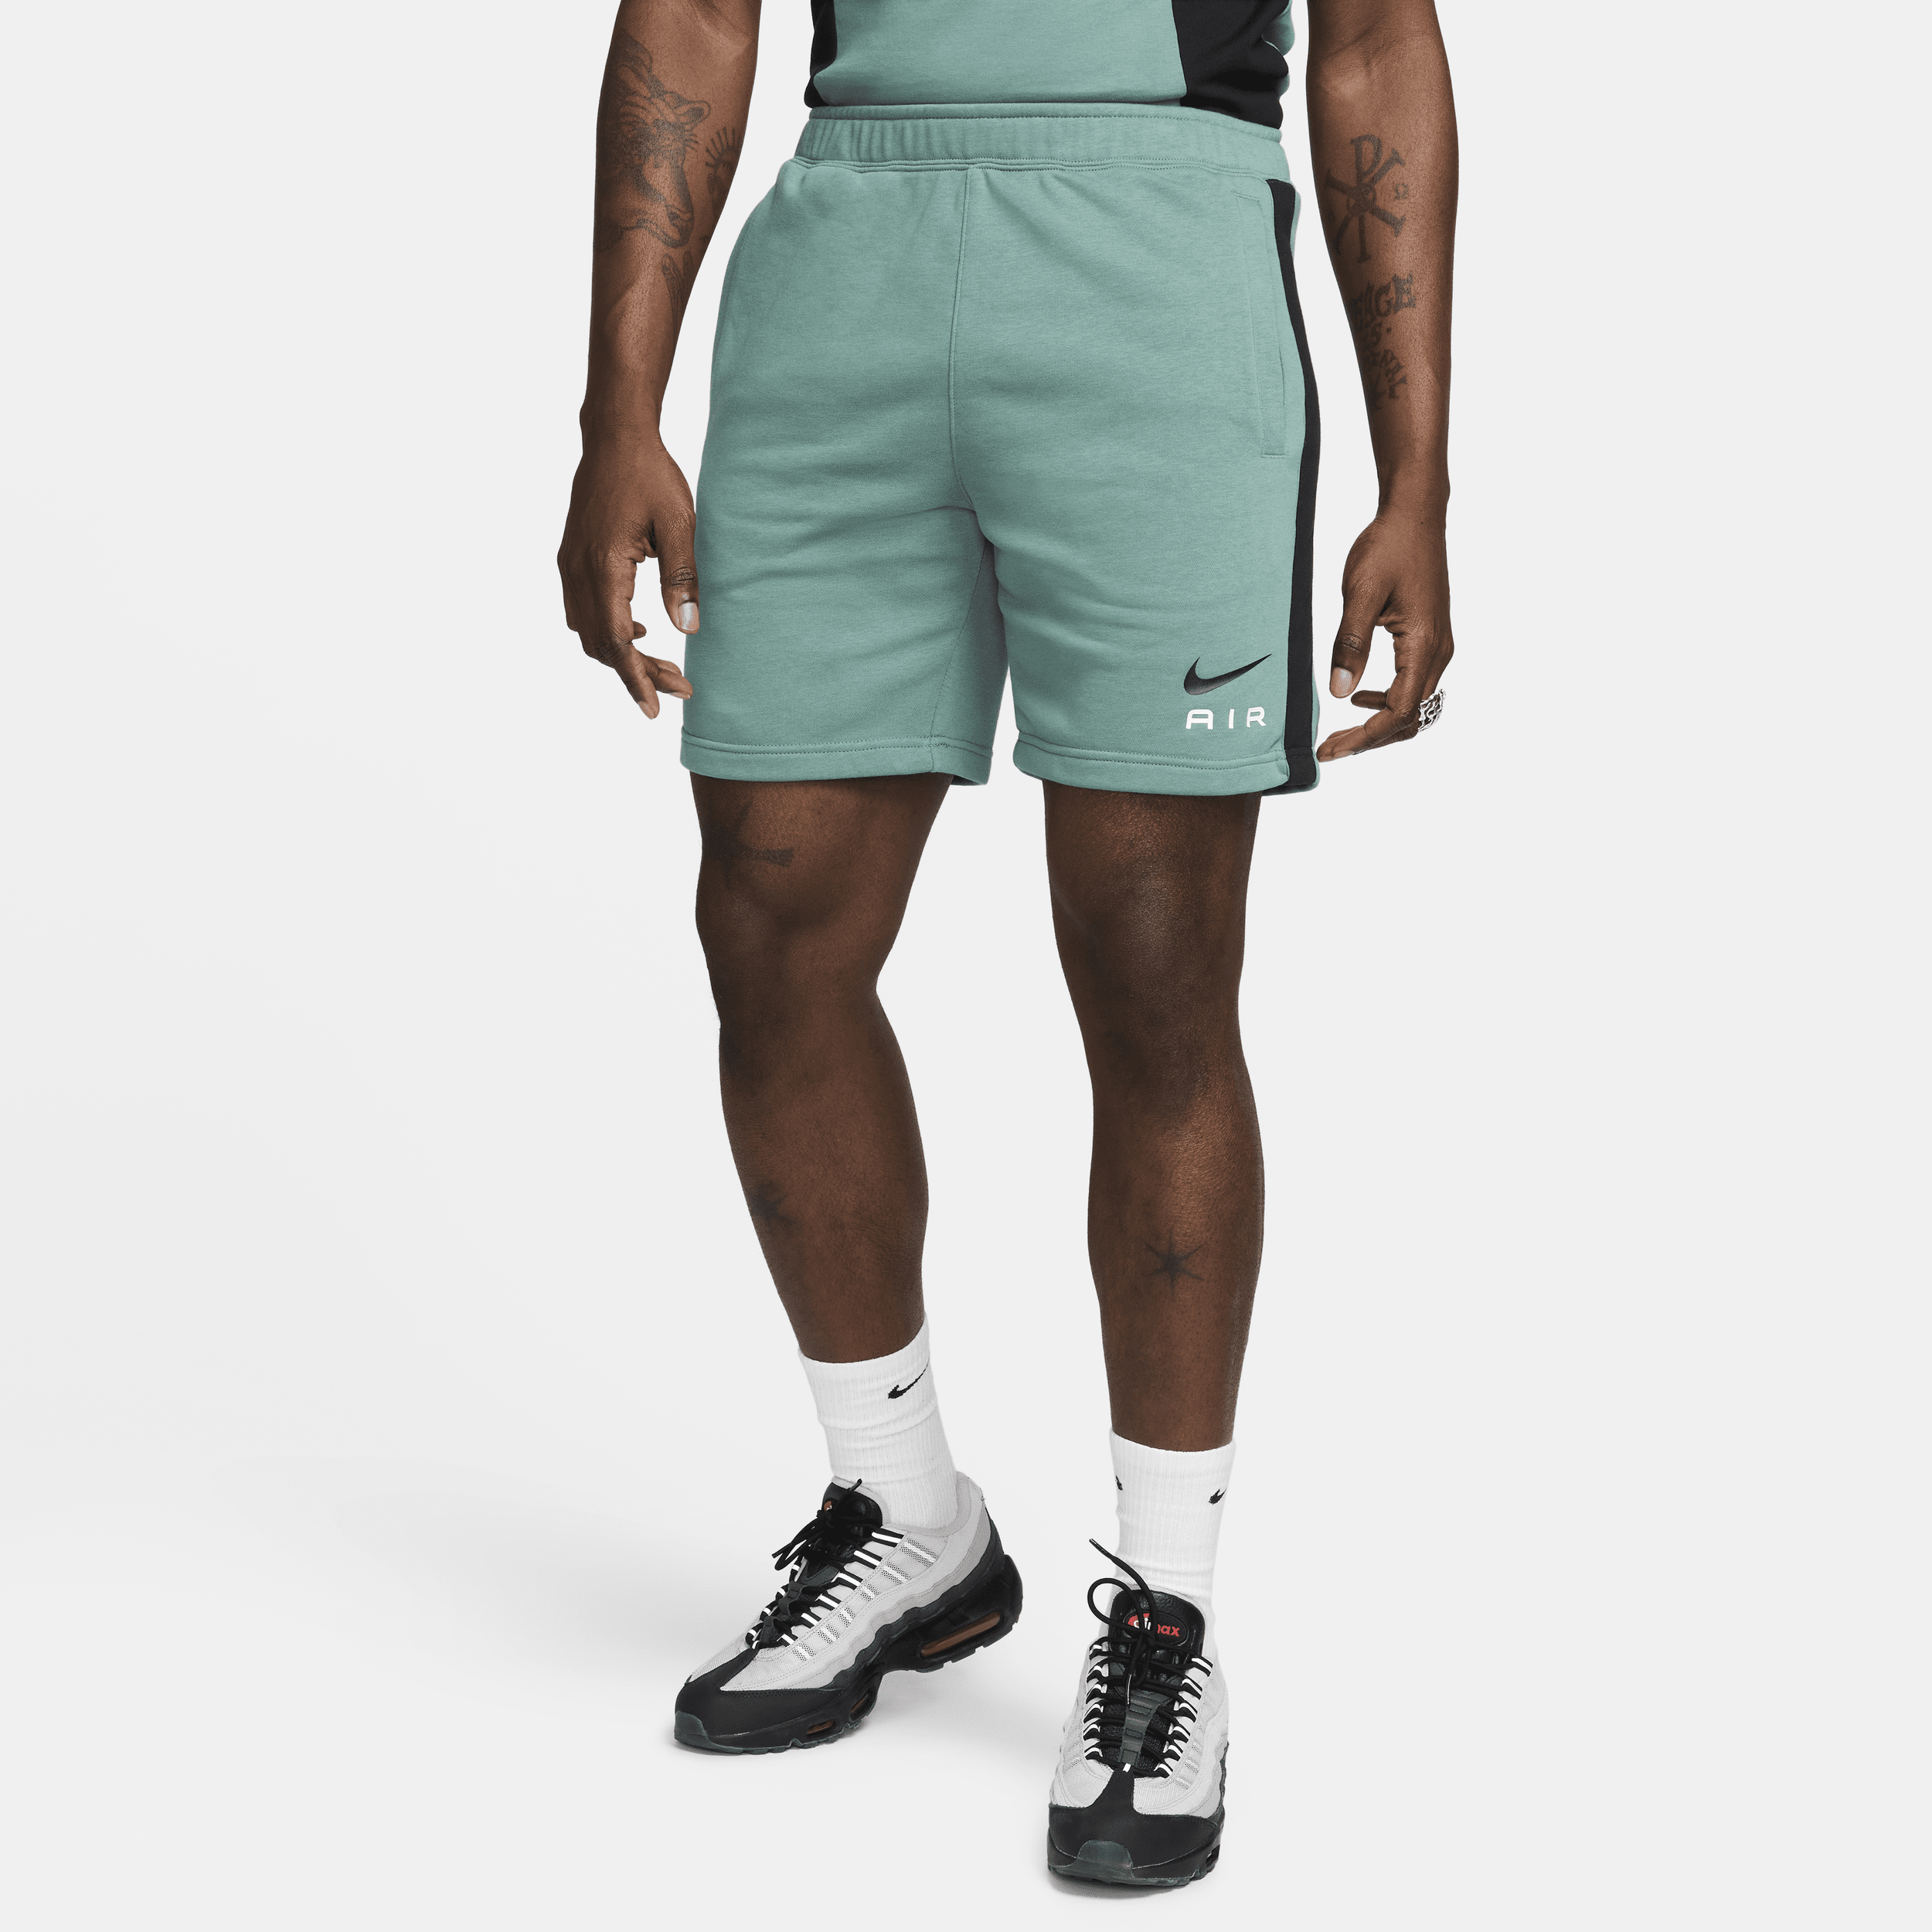 Nike Air Pantalón corto de tejido French terry - Hombre - Verde